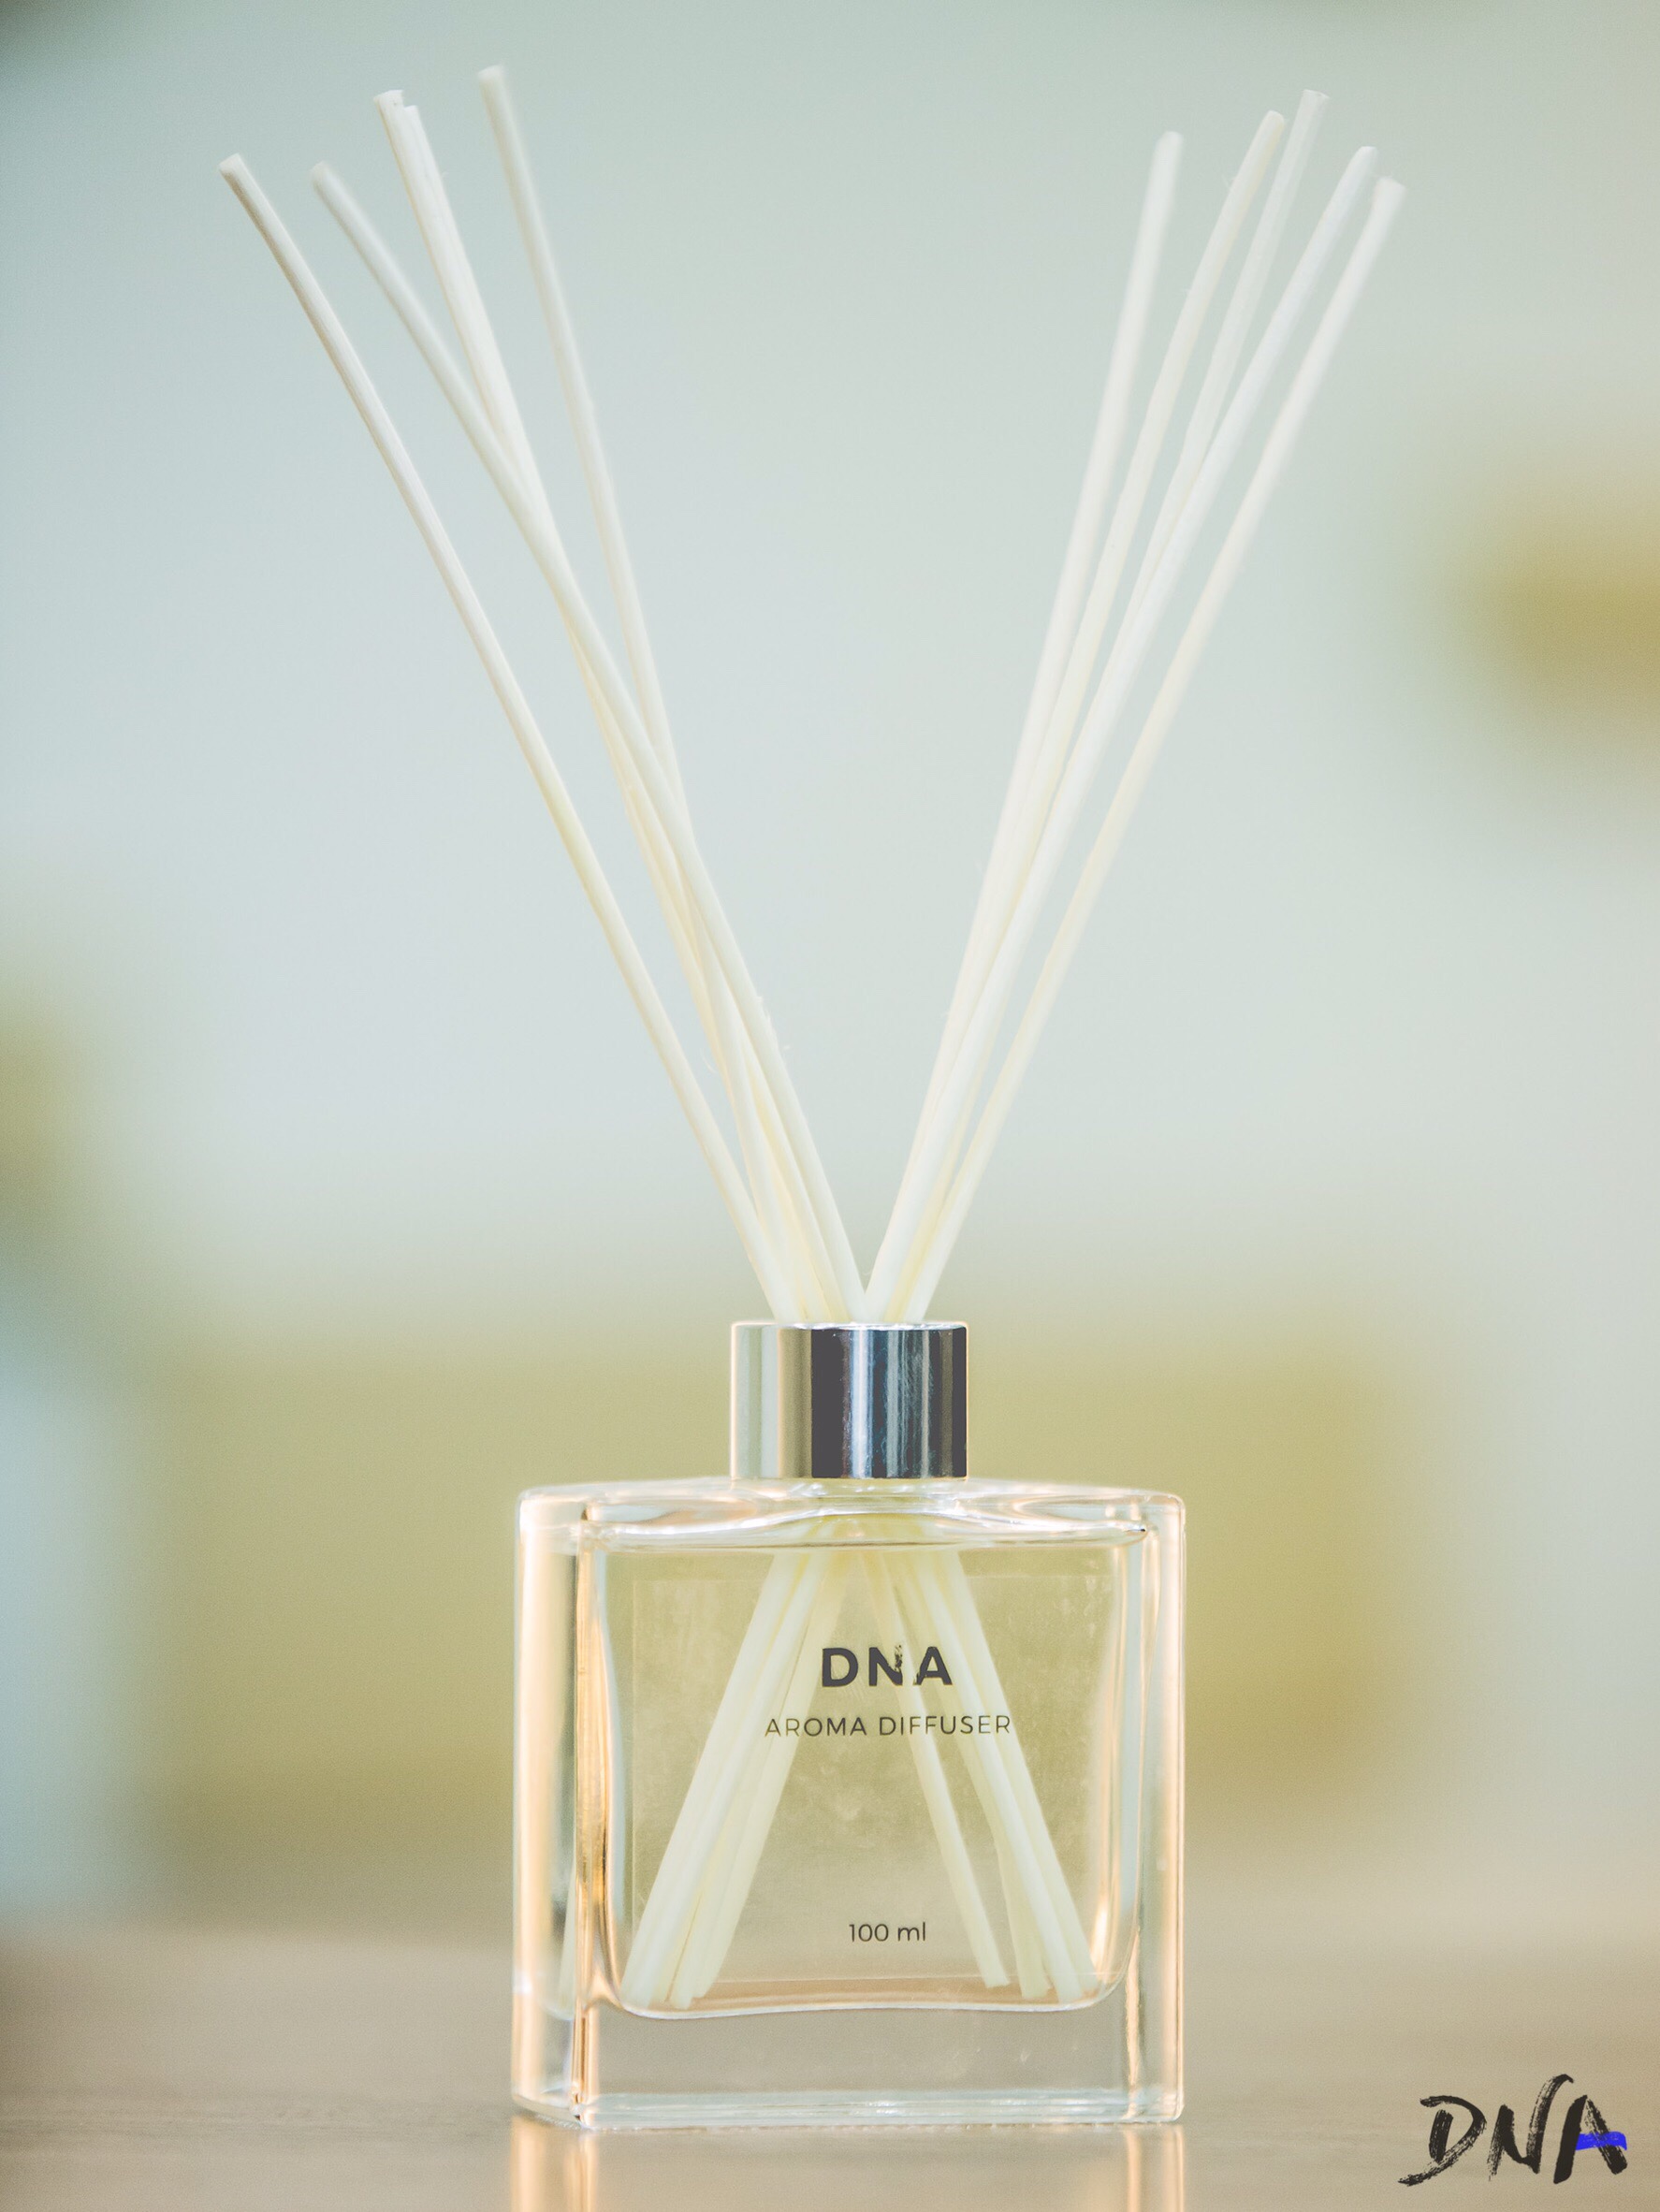 หลักสูตร DNAbySPU #DNAjournal EP.1, คุณก้อย ชลิดา คุณาลัย ,นักออกแบบกลิ่น ,Why Smell is More Important Than You Think ,กลิ่น สะกดจิต เพราะกลิ่นมีความหมาย ,คณะบริหารธุรกิจ มหาวิทยาลัยศรีปทุม